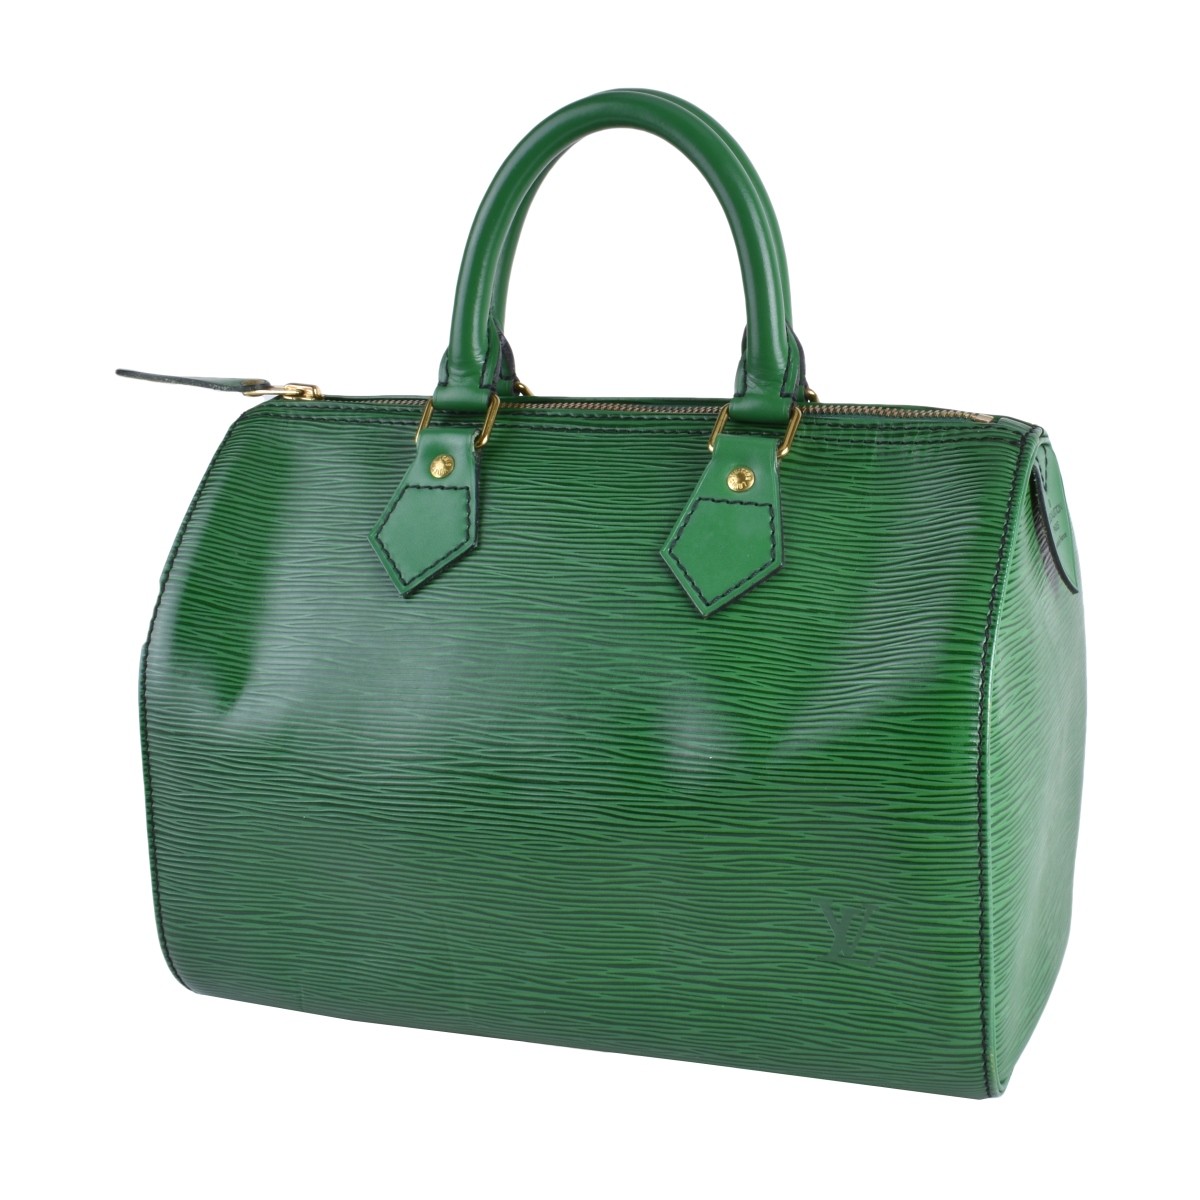 Louis Vuitton Green Epi Leather Speedy 25 Bag